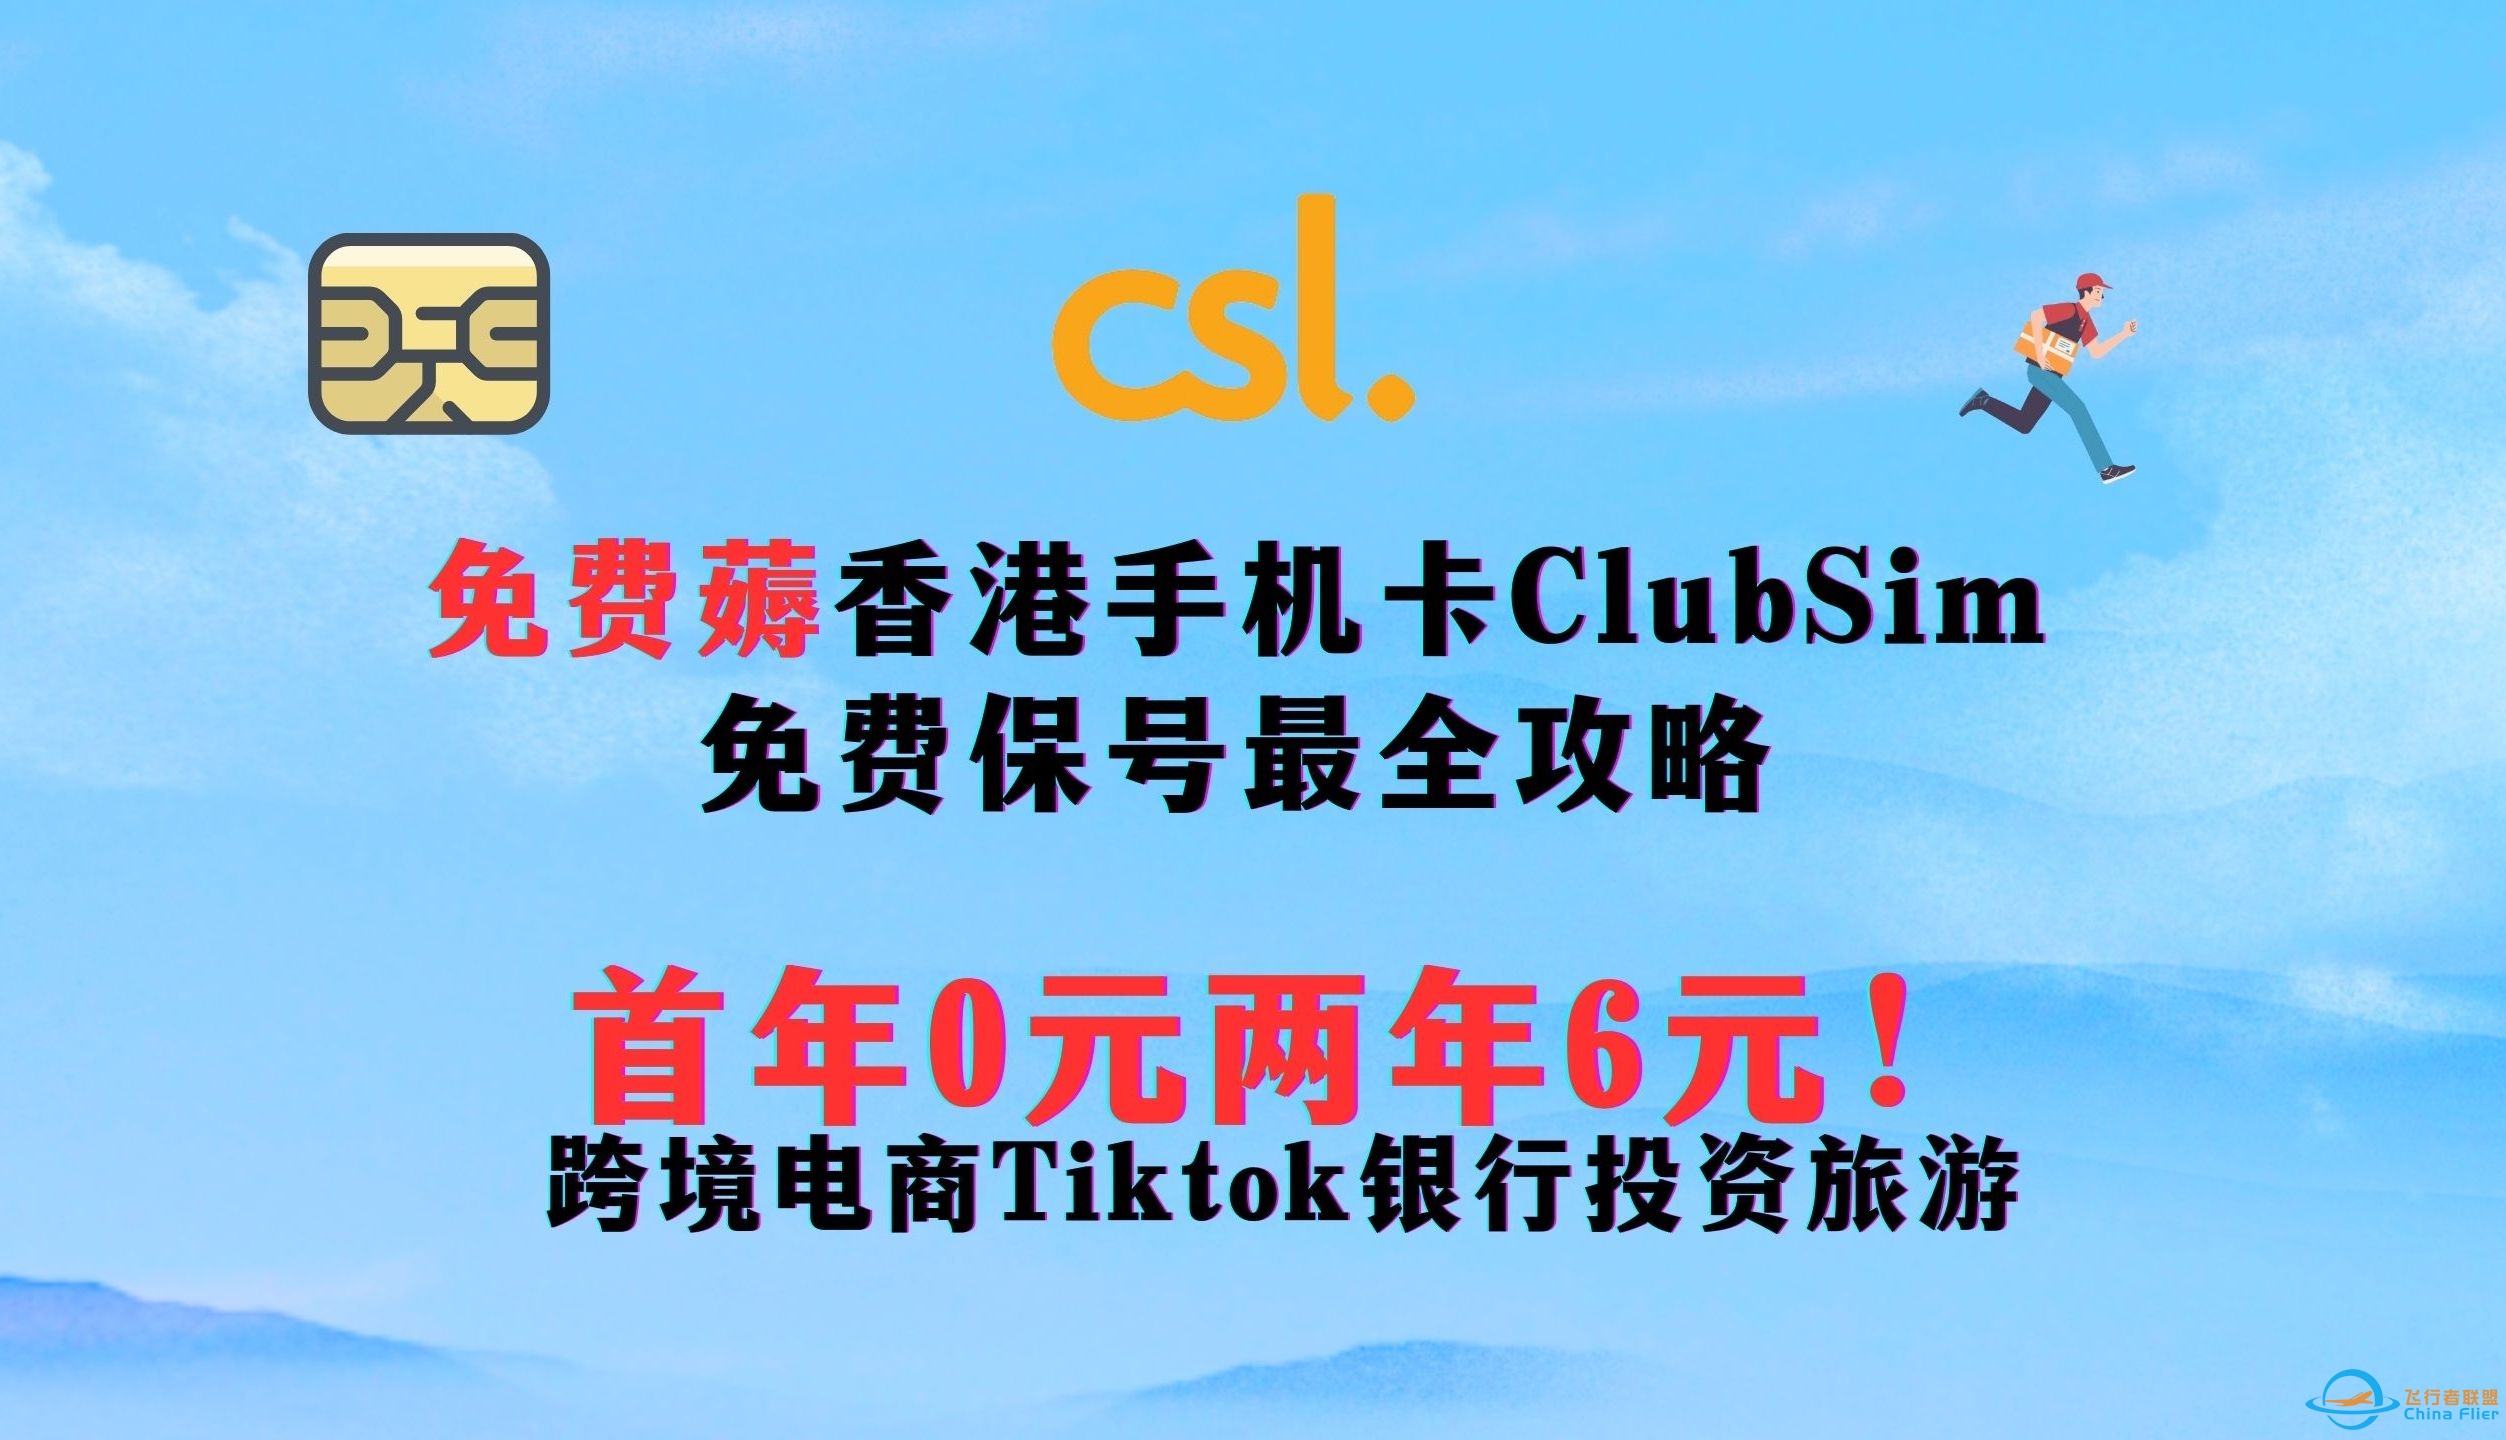 【2024年最新】0元免费薅香港手机卡Club sim 长期免费用！  最全最详细申请保号使用攻略   首年0元两年仅6元 ||跨境电商Tiktok银行投资旅游-3175 